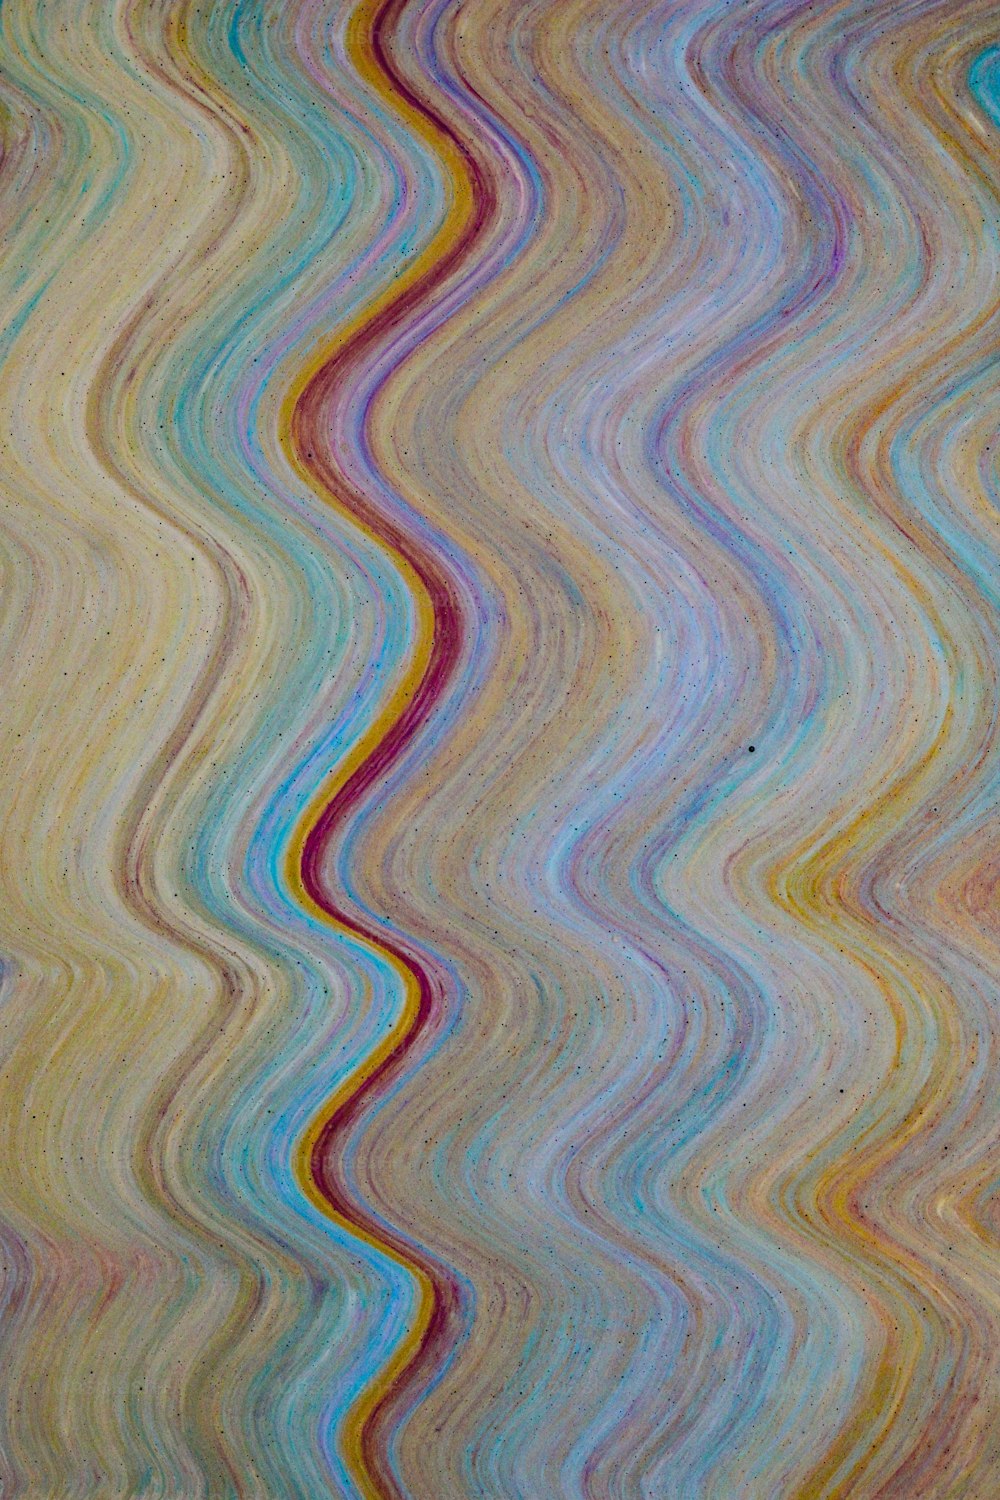 In questa immagine è mostrato un motivo d'onda multicolore